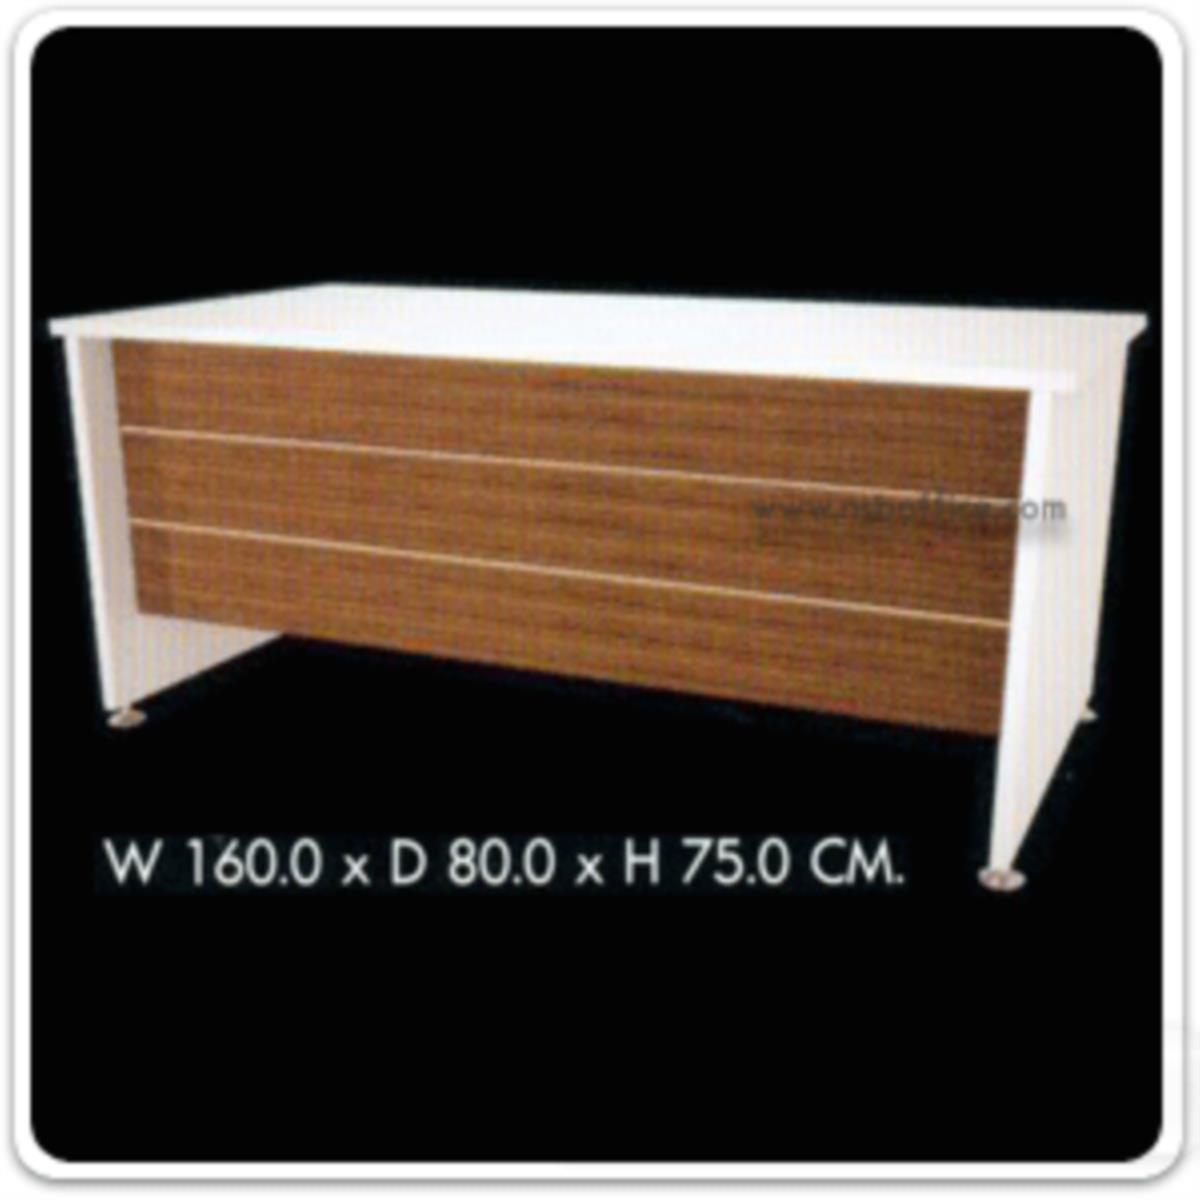 โต๊ะทำงาน รุ่น Trendroad (เทรนโรด) ขนาด 120W ,150W ,160W cm.  สีซีบราโน่-ขาว